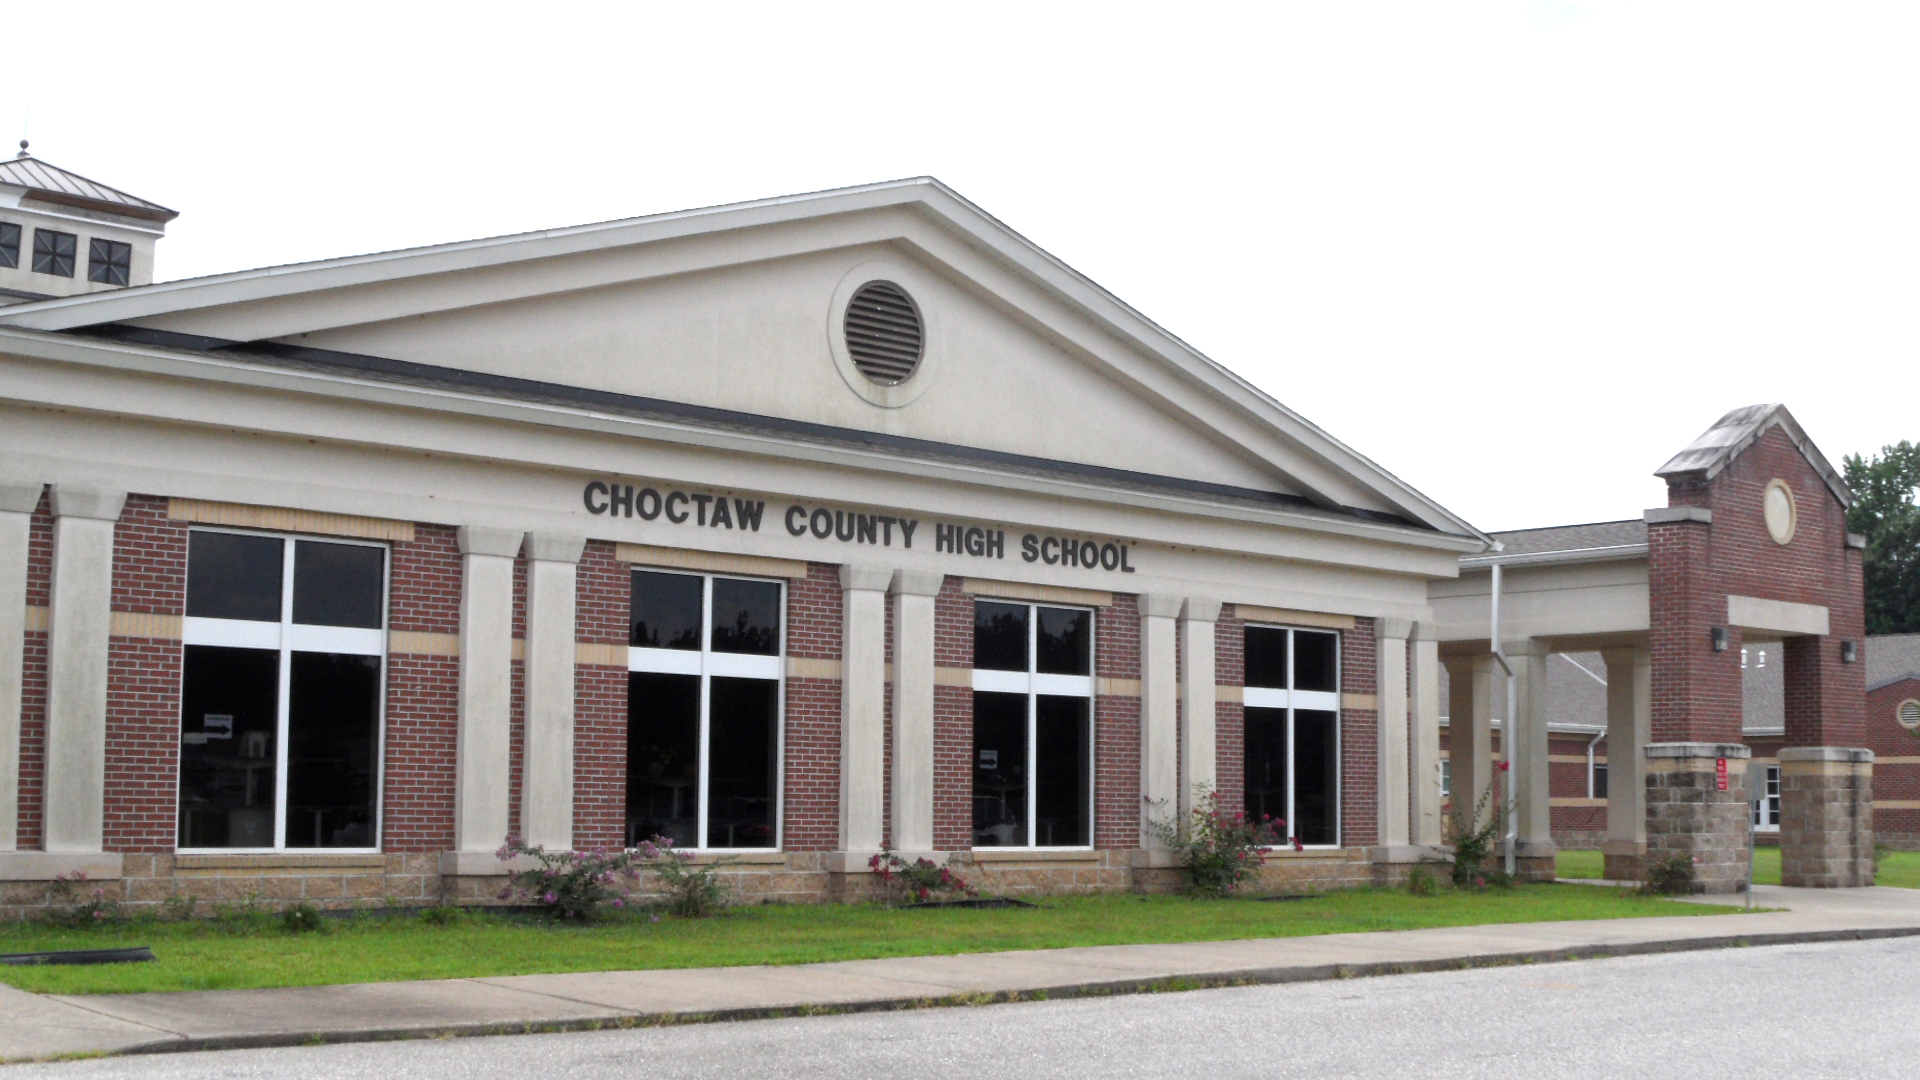 Choctaw County High School